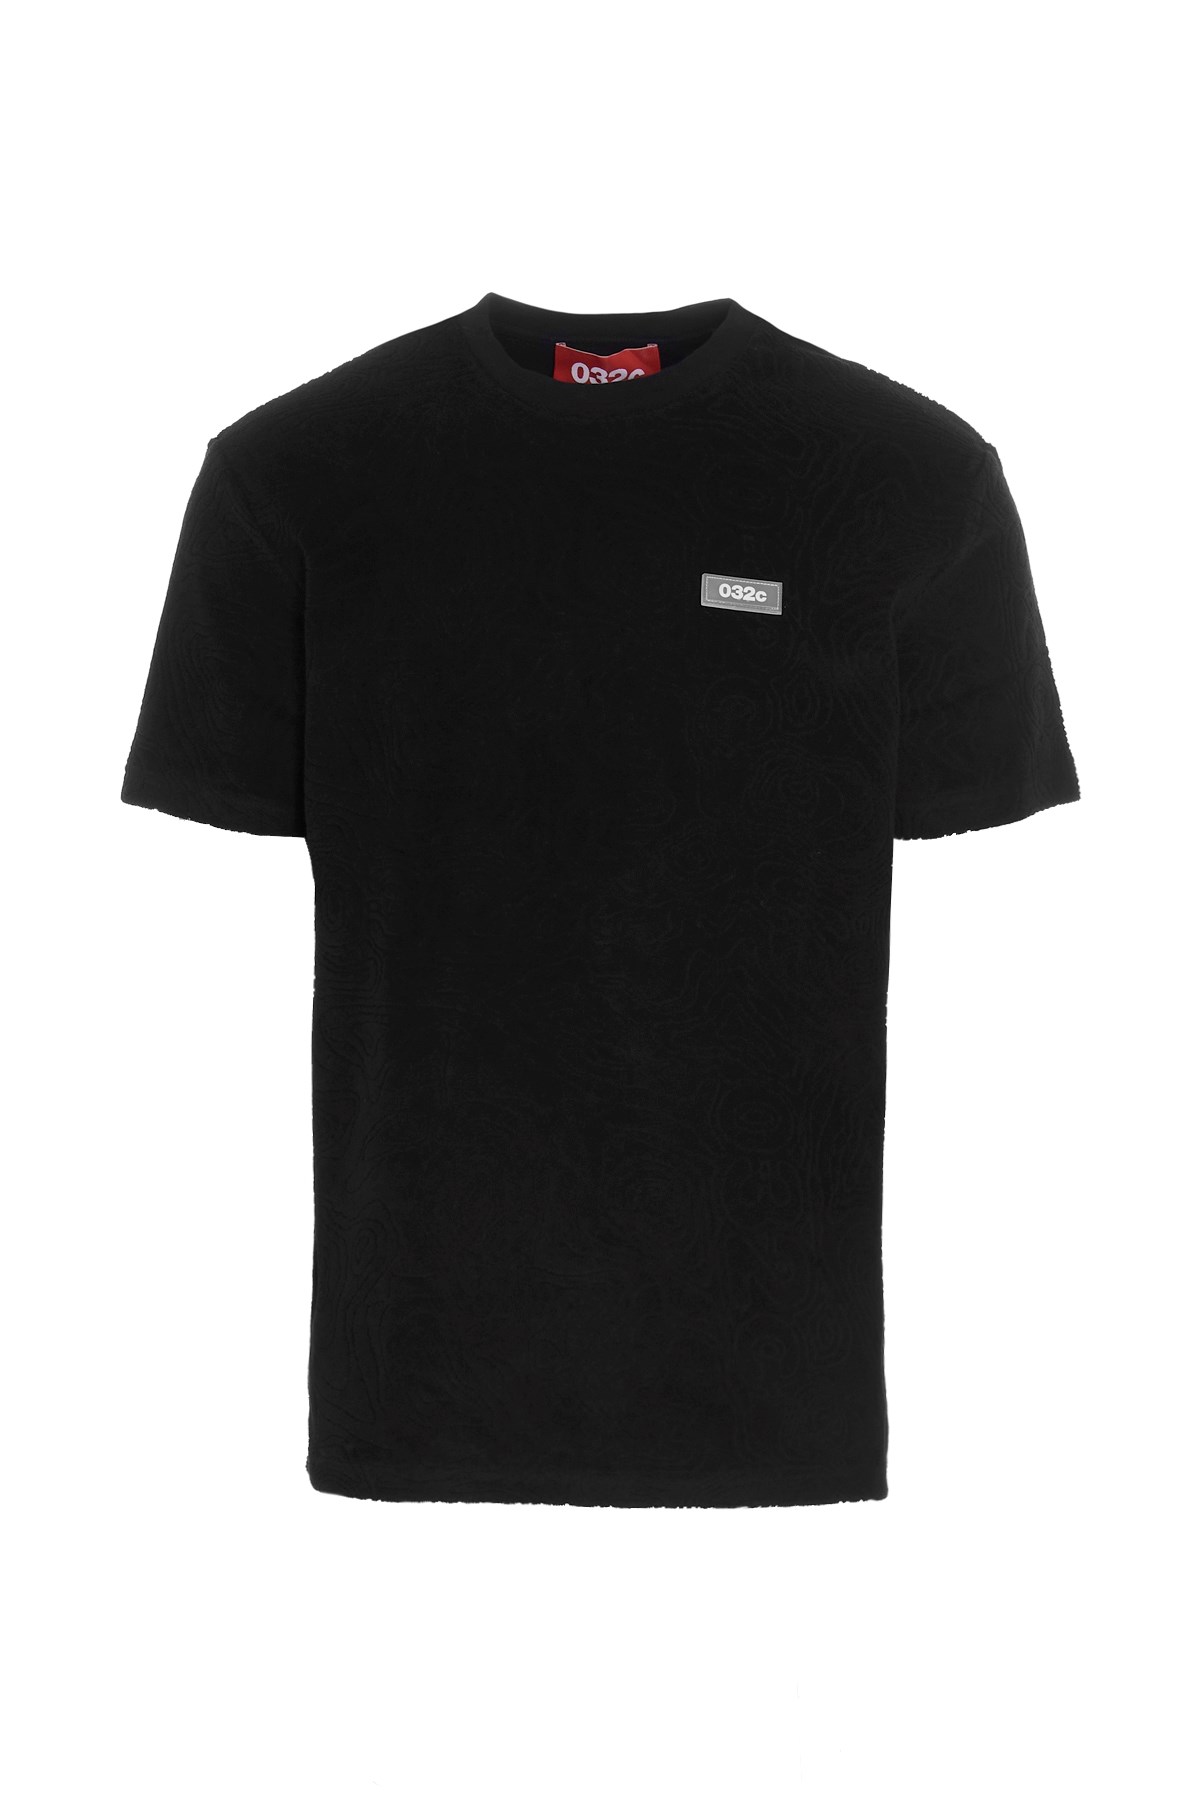 032C 'Topos' T-Shirt